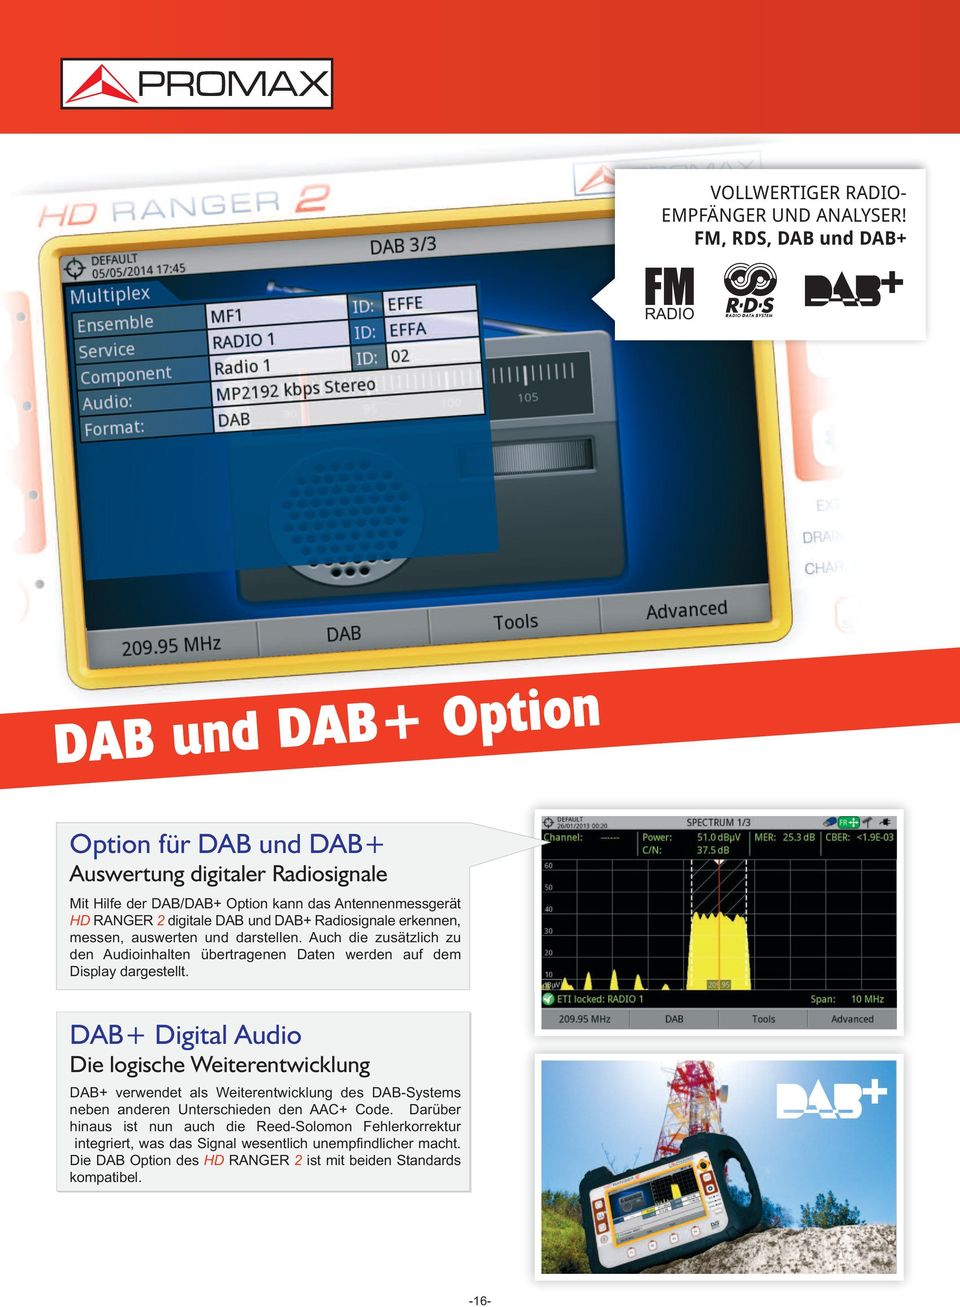 digitale DAB und DAB+ Radiosignale erkennen, messen, auswerten und darstellen. Auch die zusätzlich zu den Audioinhalten übertragenen Daten werden auf dem Display dargestellt.